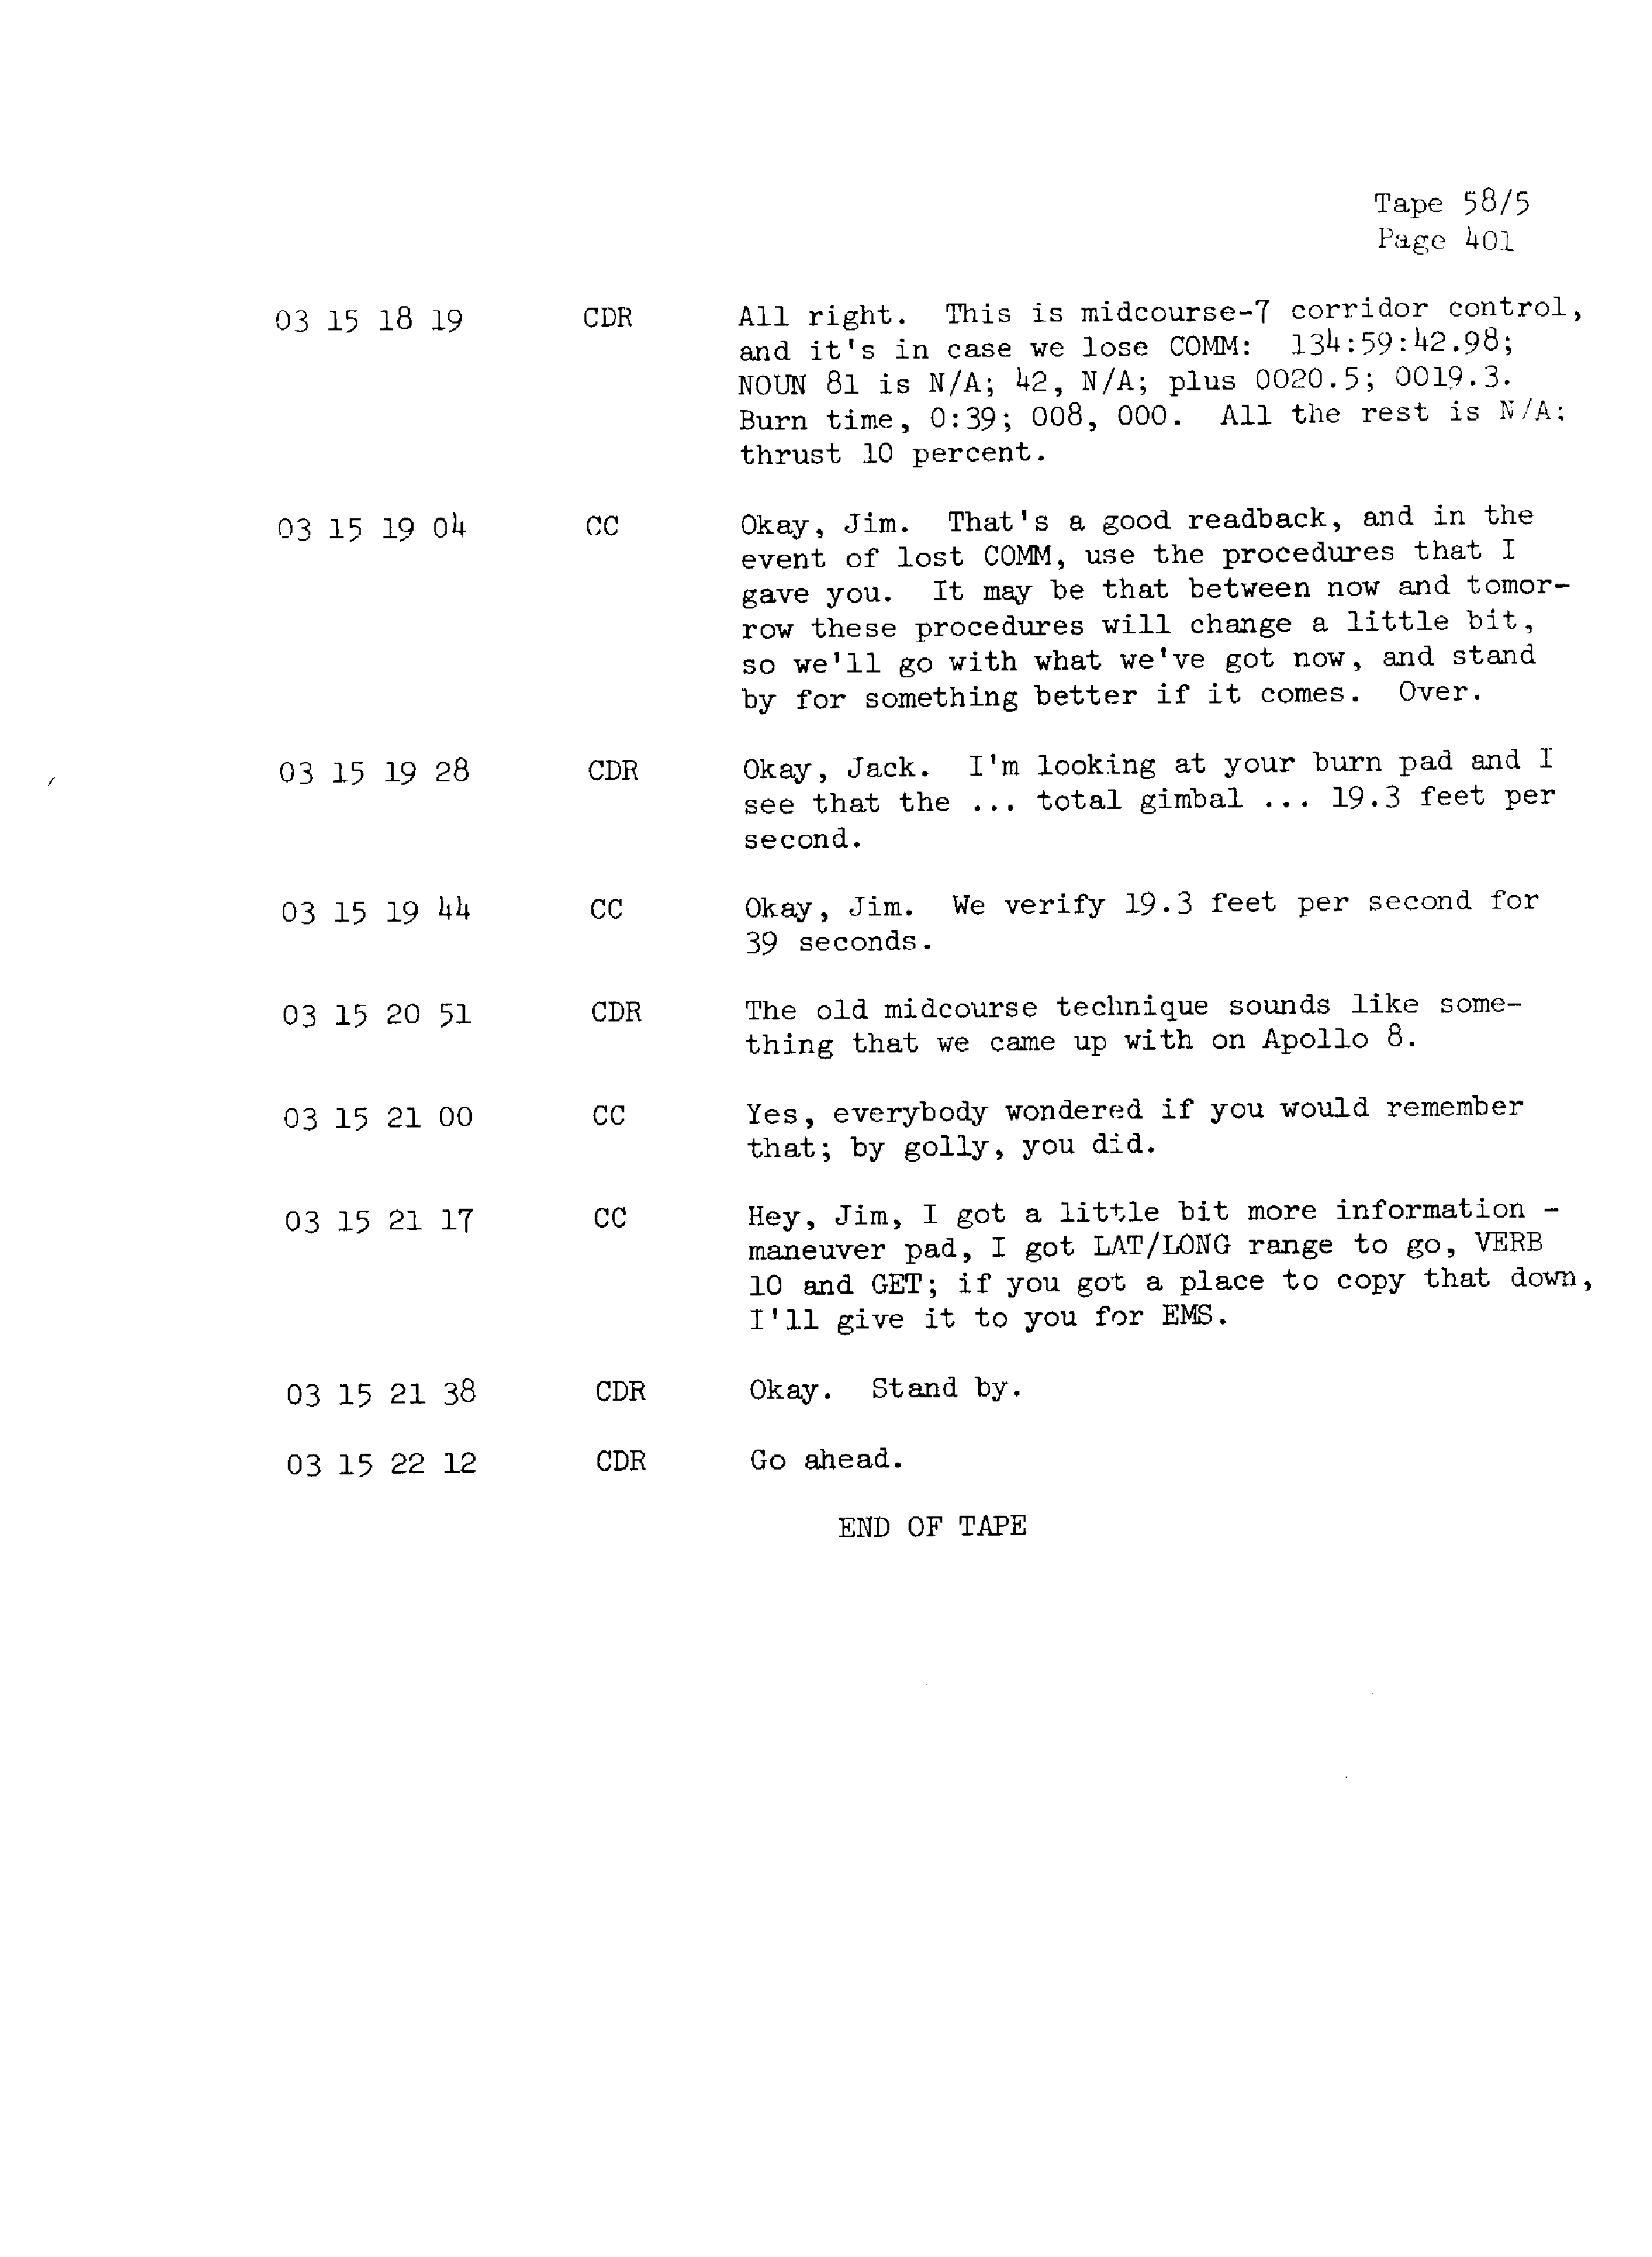 Page 408 of Apollo 13’s original transcript